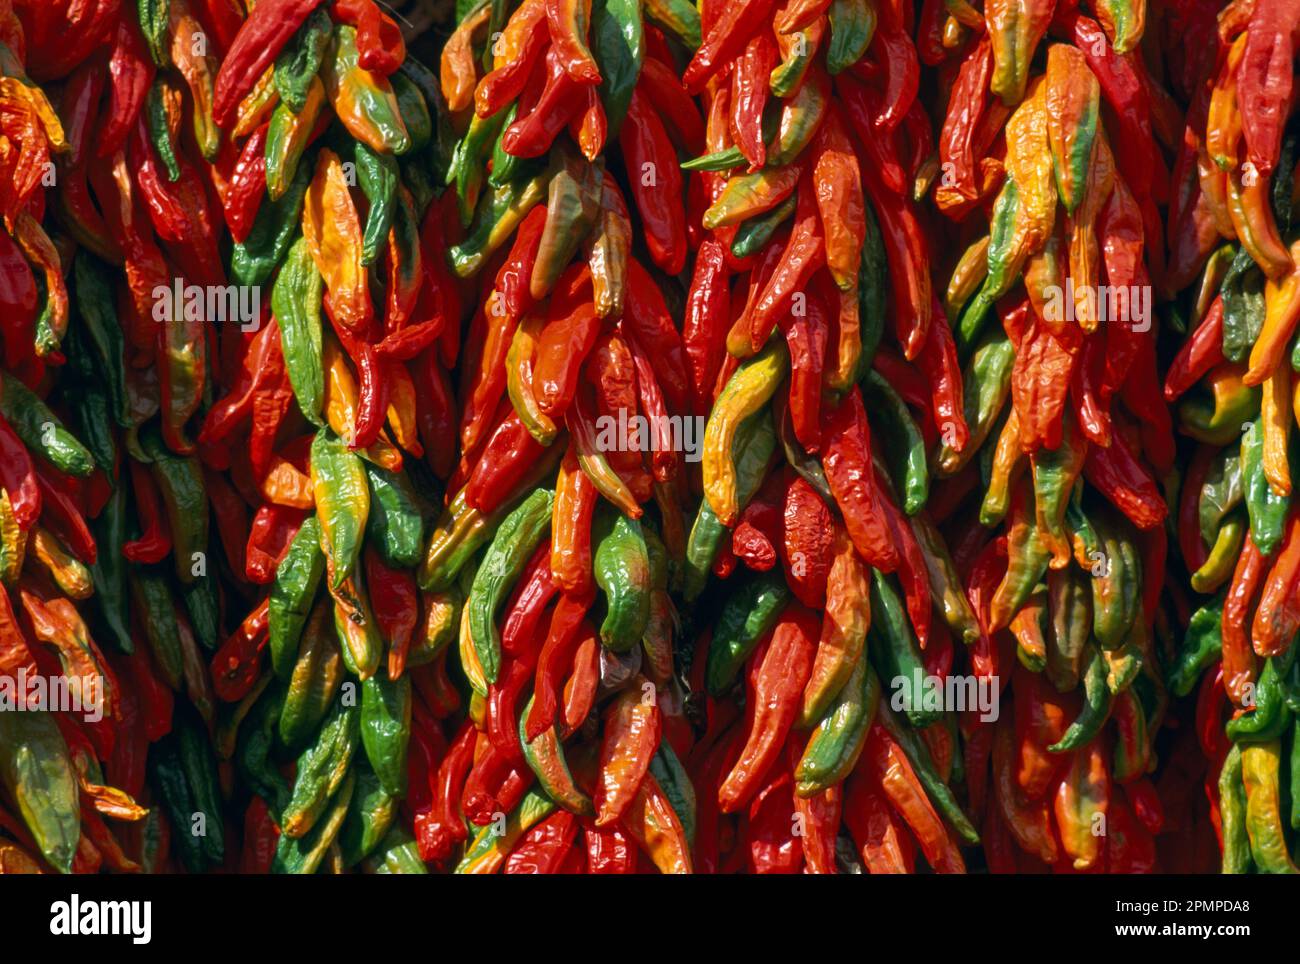 Reihen roter und grüner Chilischoten hängen in Trauben zusammen; Santa Fe, New Mexico, Vereinigte Staaten von Amerika Stockfoto